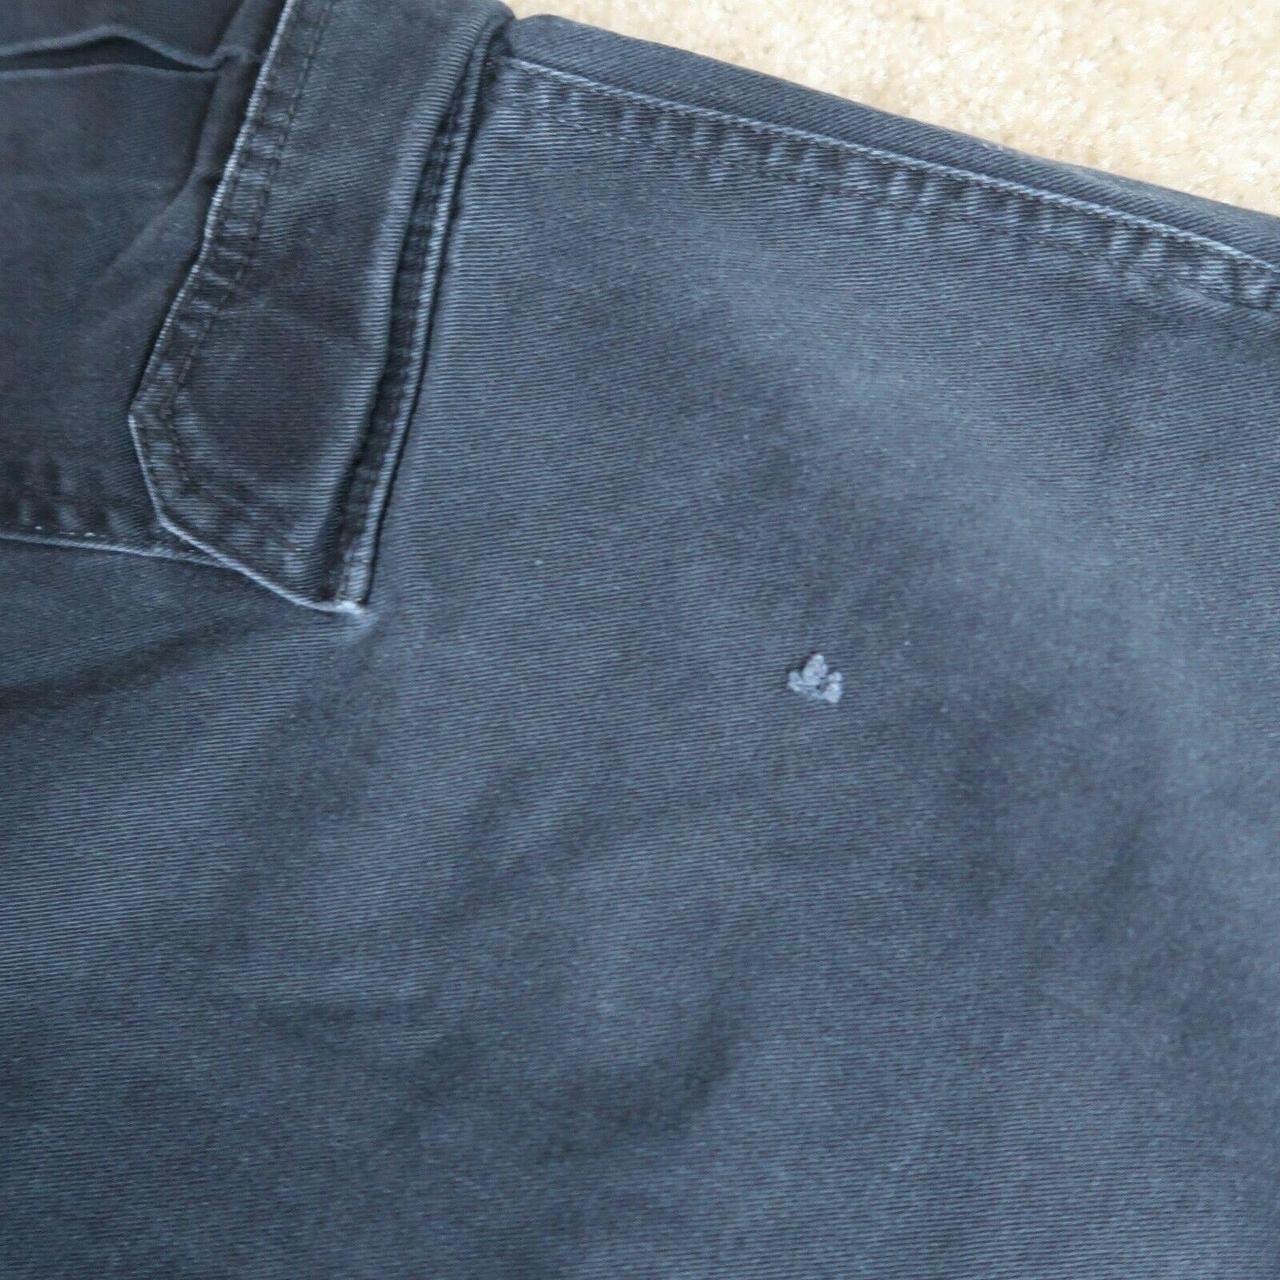 Dickies Cargo Pants Black Workwear Pant Men's... - Depop